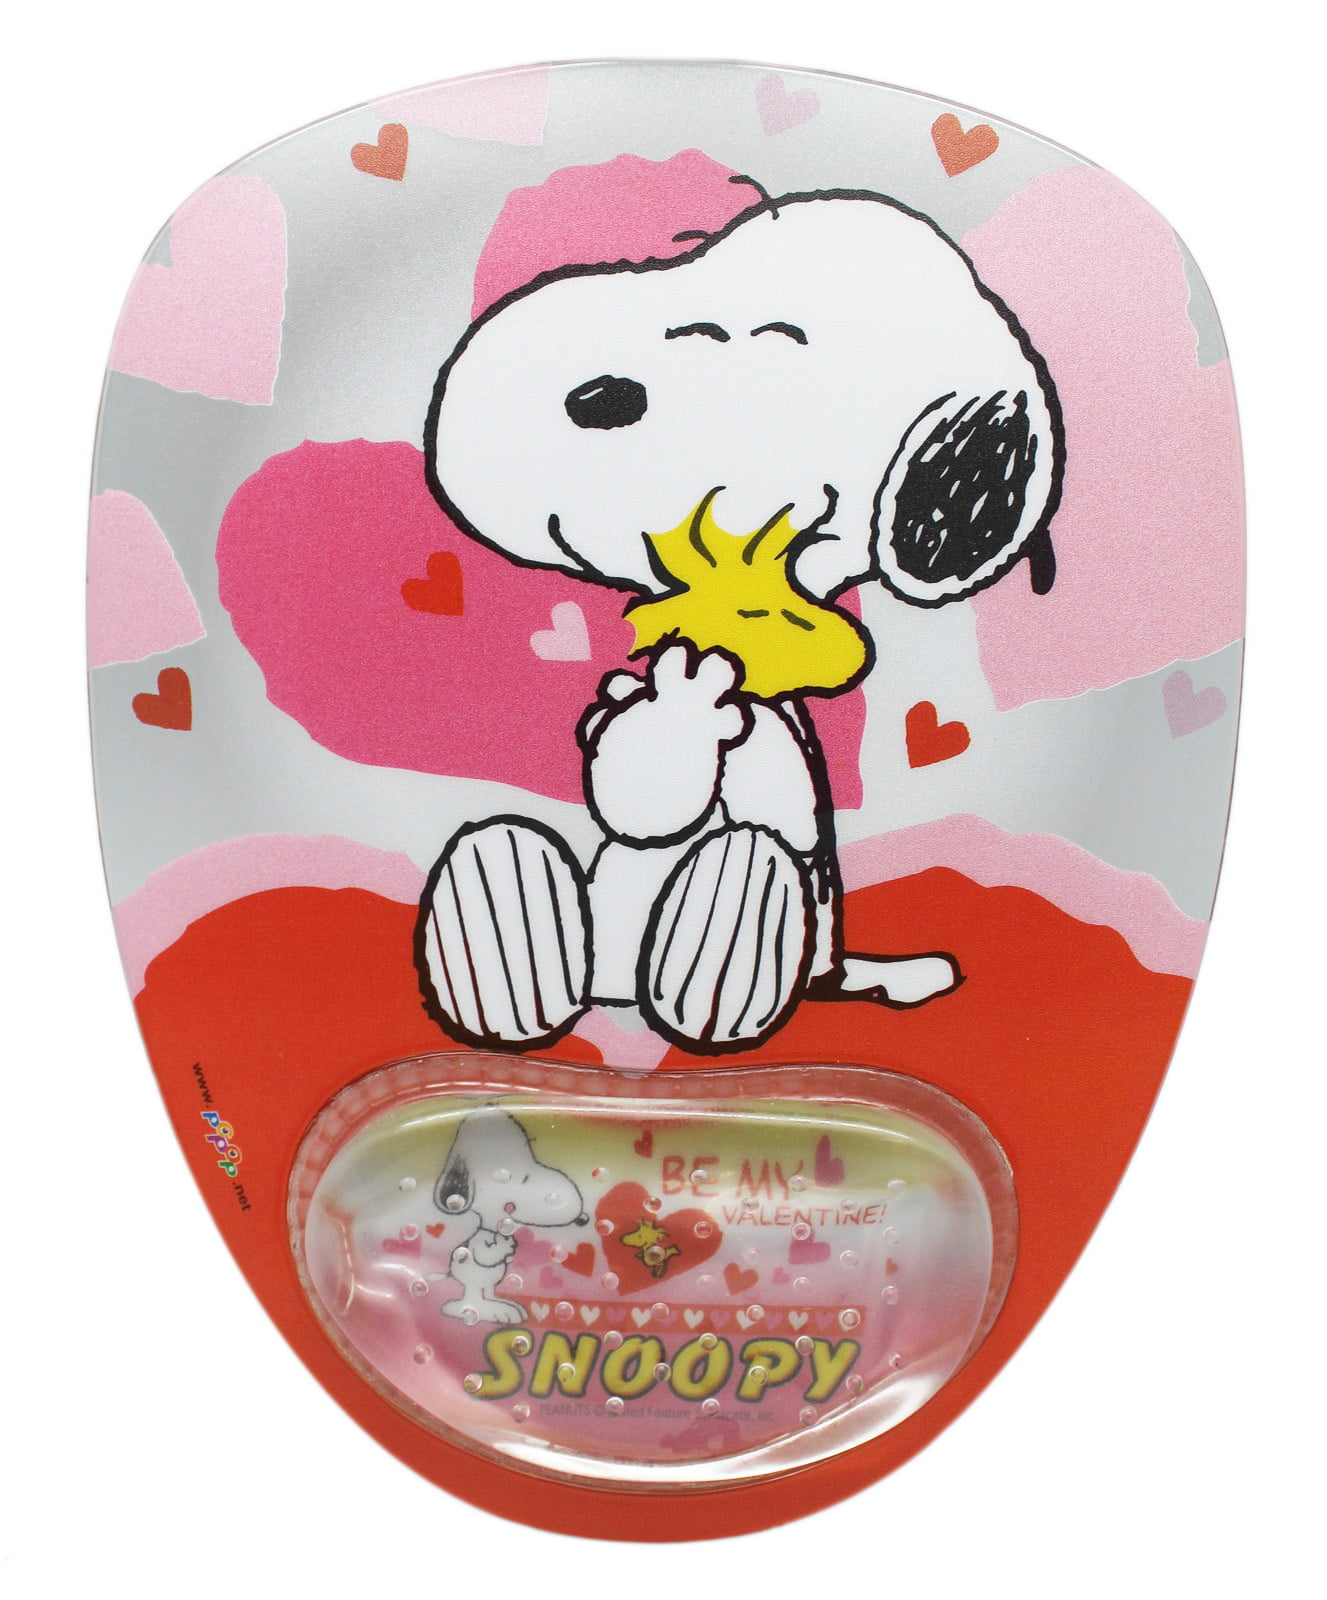 BGLKCS 1 X Customize Your Own Snoopy Mouse Pad Cartoon Mousepad-JN407 